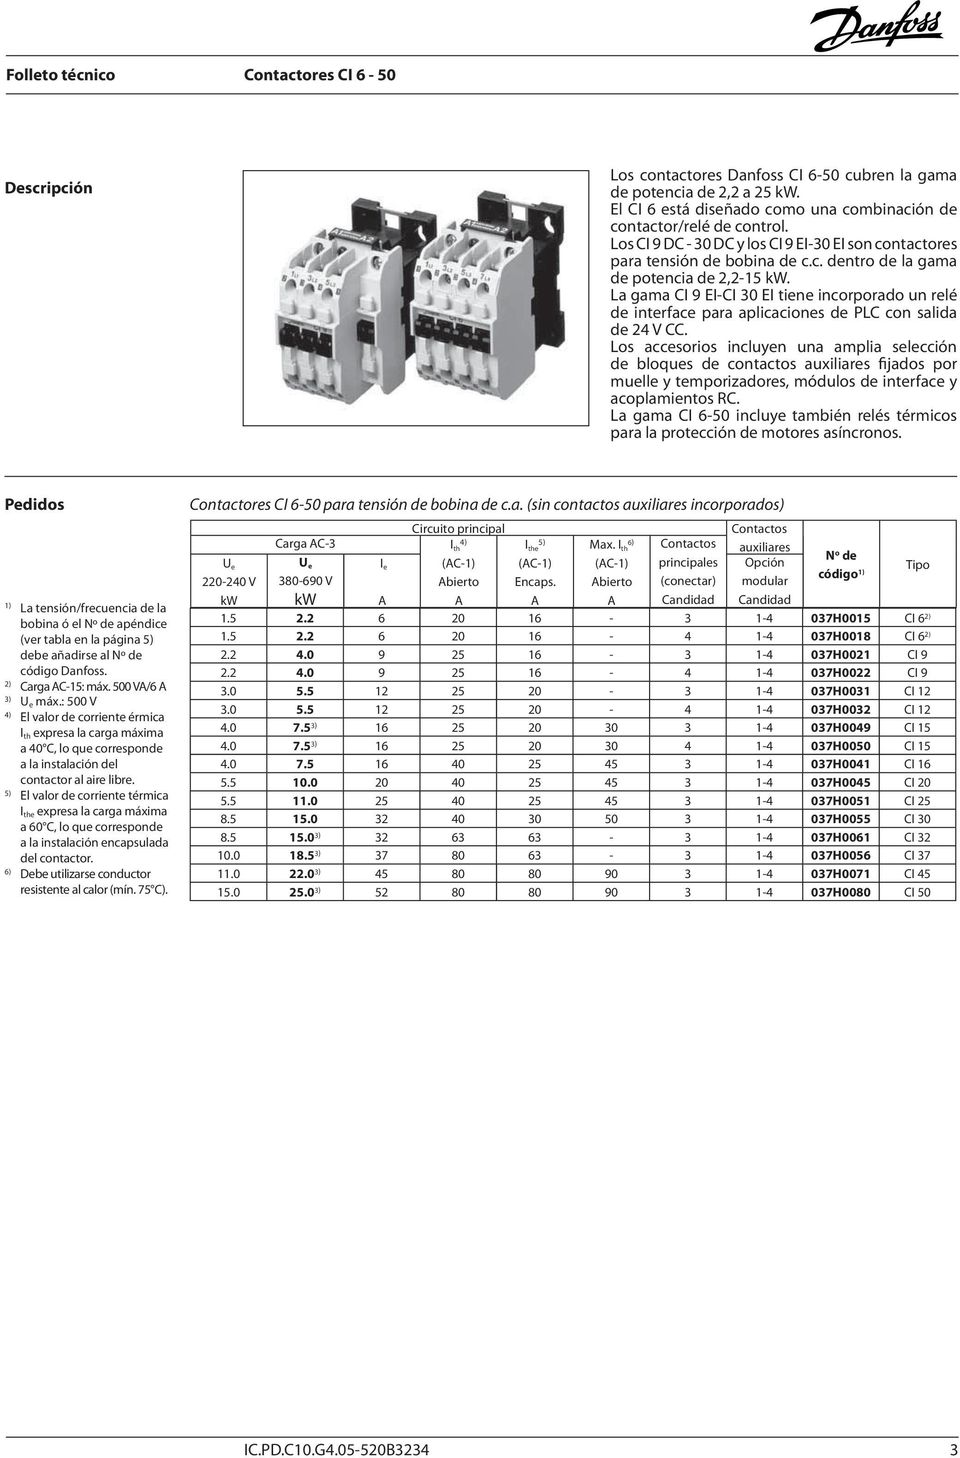 La gama CI 9 EI-CI 30 EI tiene incorporado un relé de interface para aplicaciones de PLC con salida de 24 V CC.